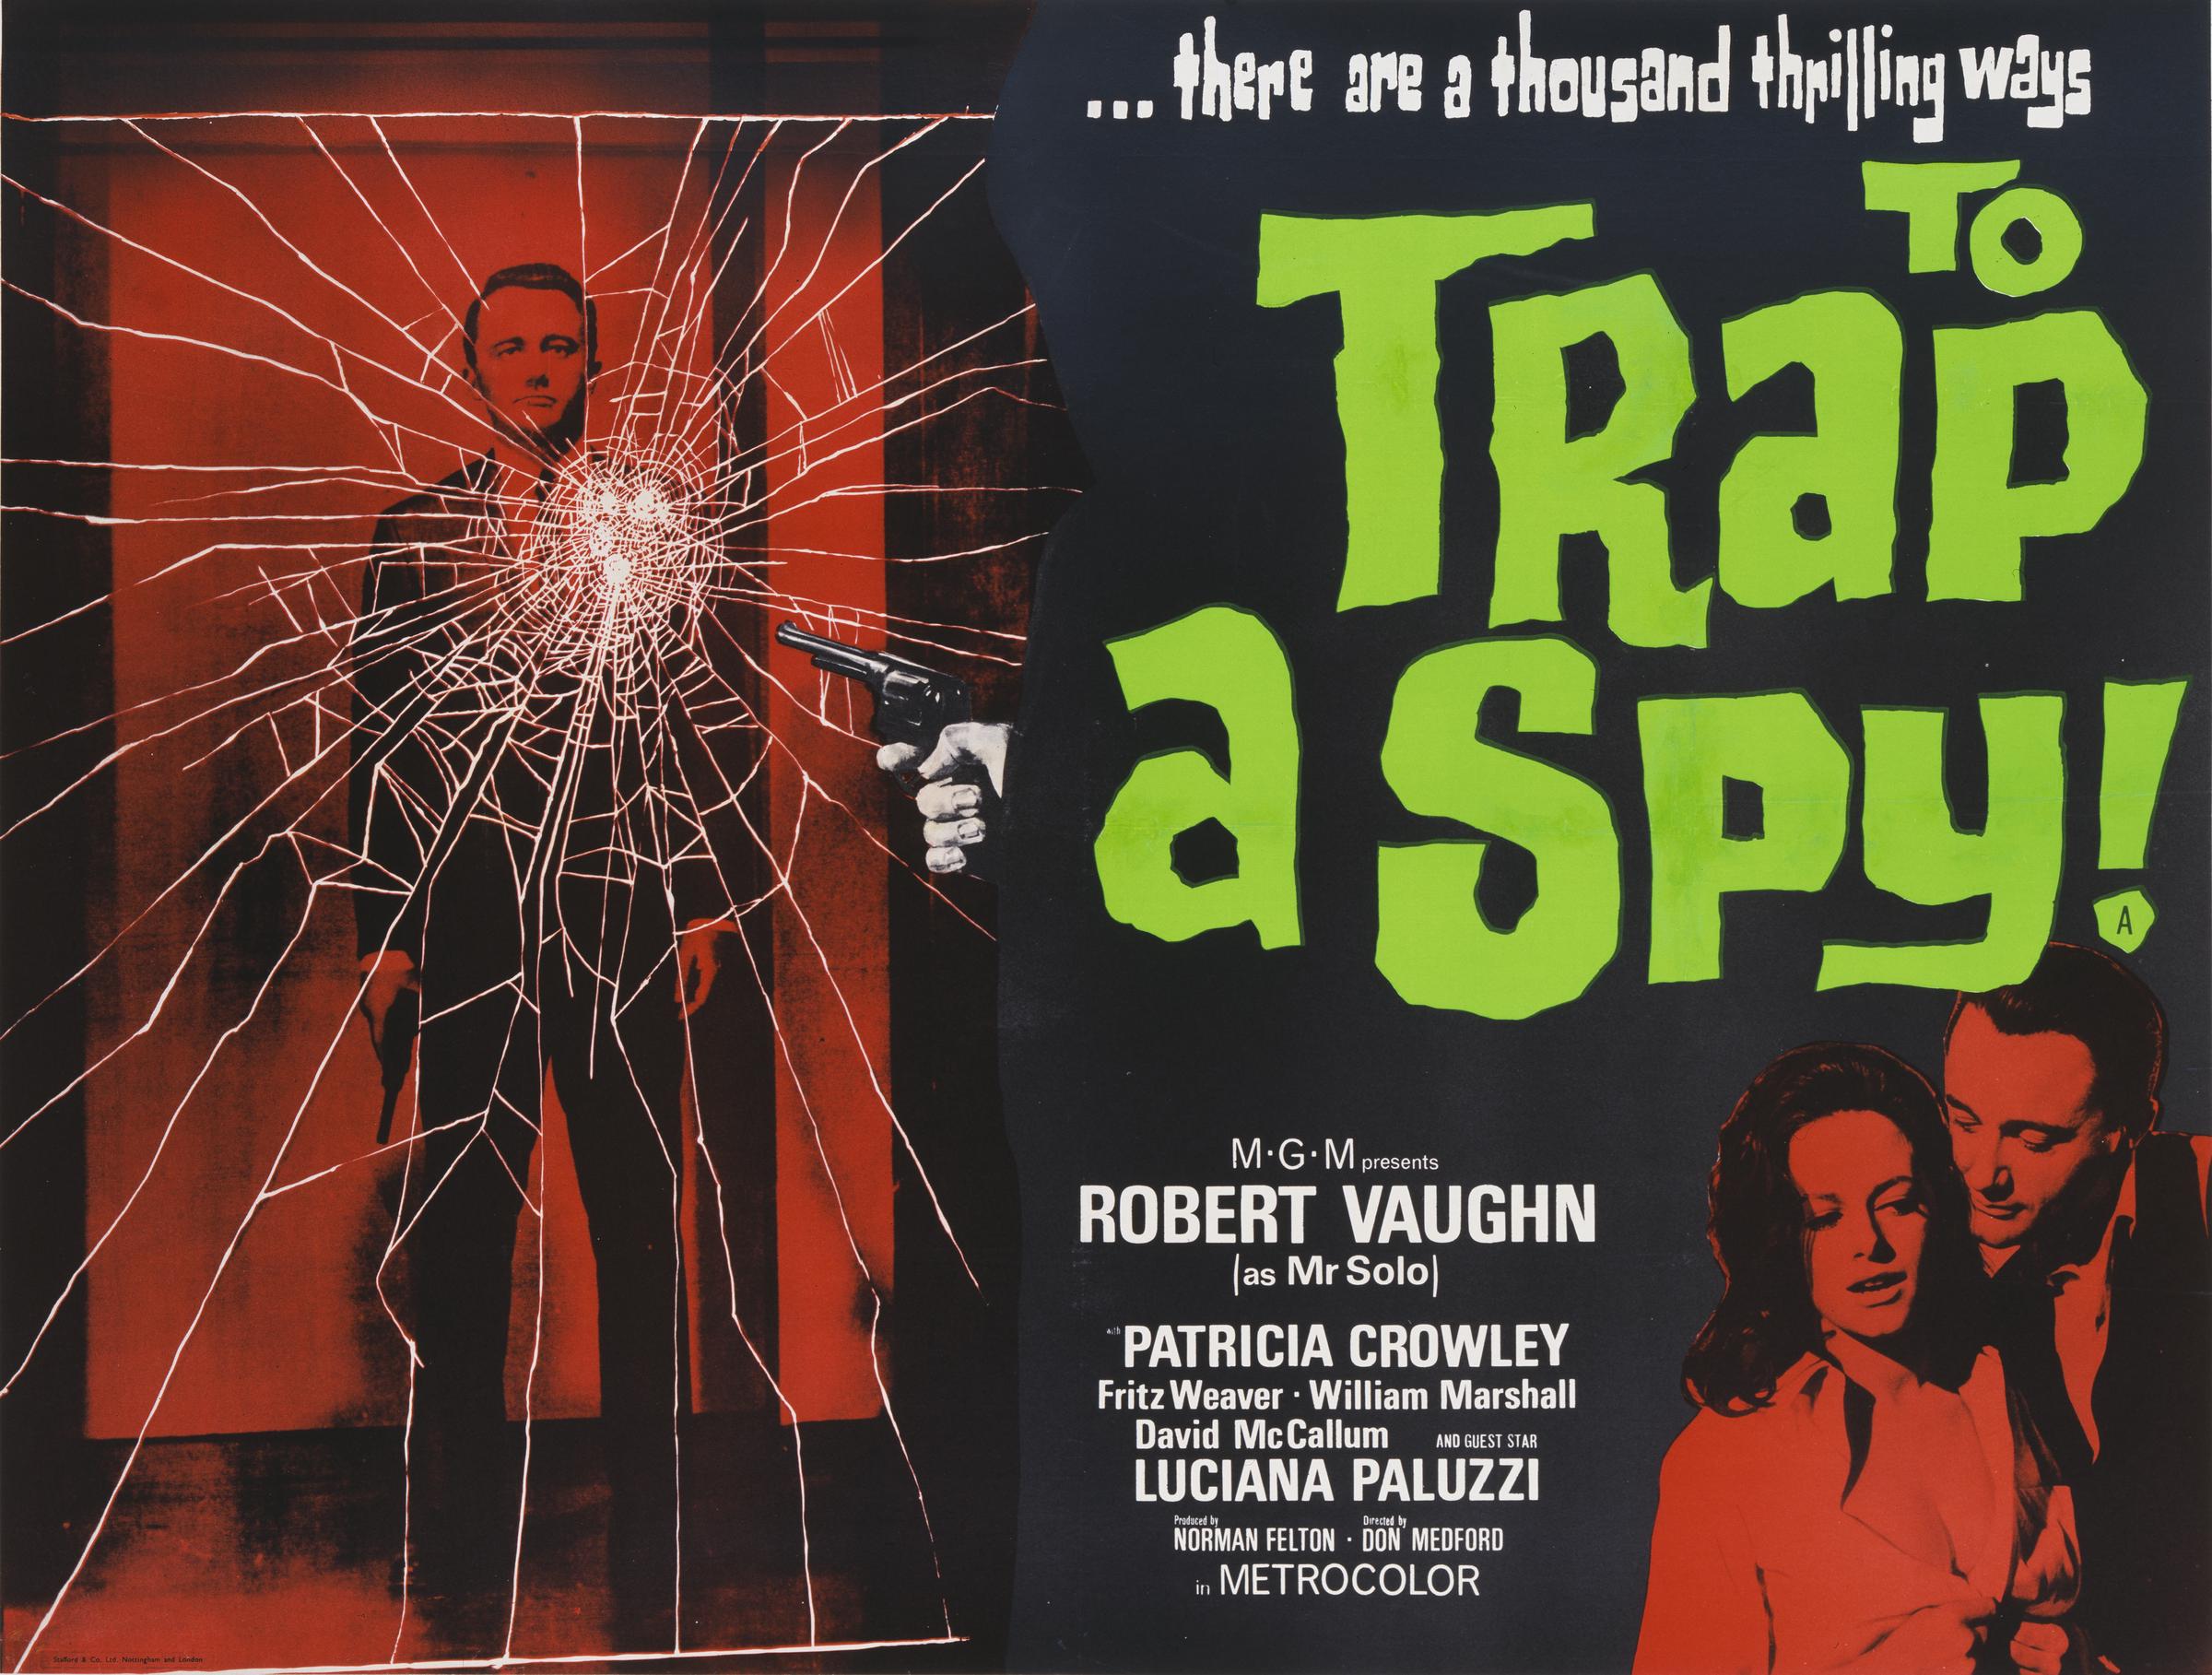 Robert Vaughn und Luciana Paluzzi sind auf dem Plakat für den MGM-Film "To Trap A Spy" zu sehen, dem Pilotfilm zur Fernsehserie "The Man From U.N.C.L.E." von 1964. | Quelle: Getty Images